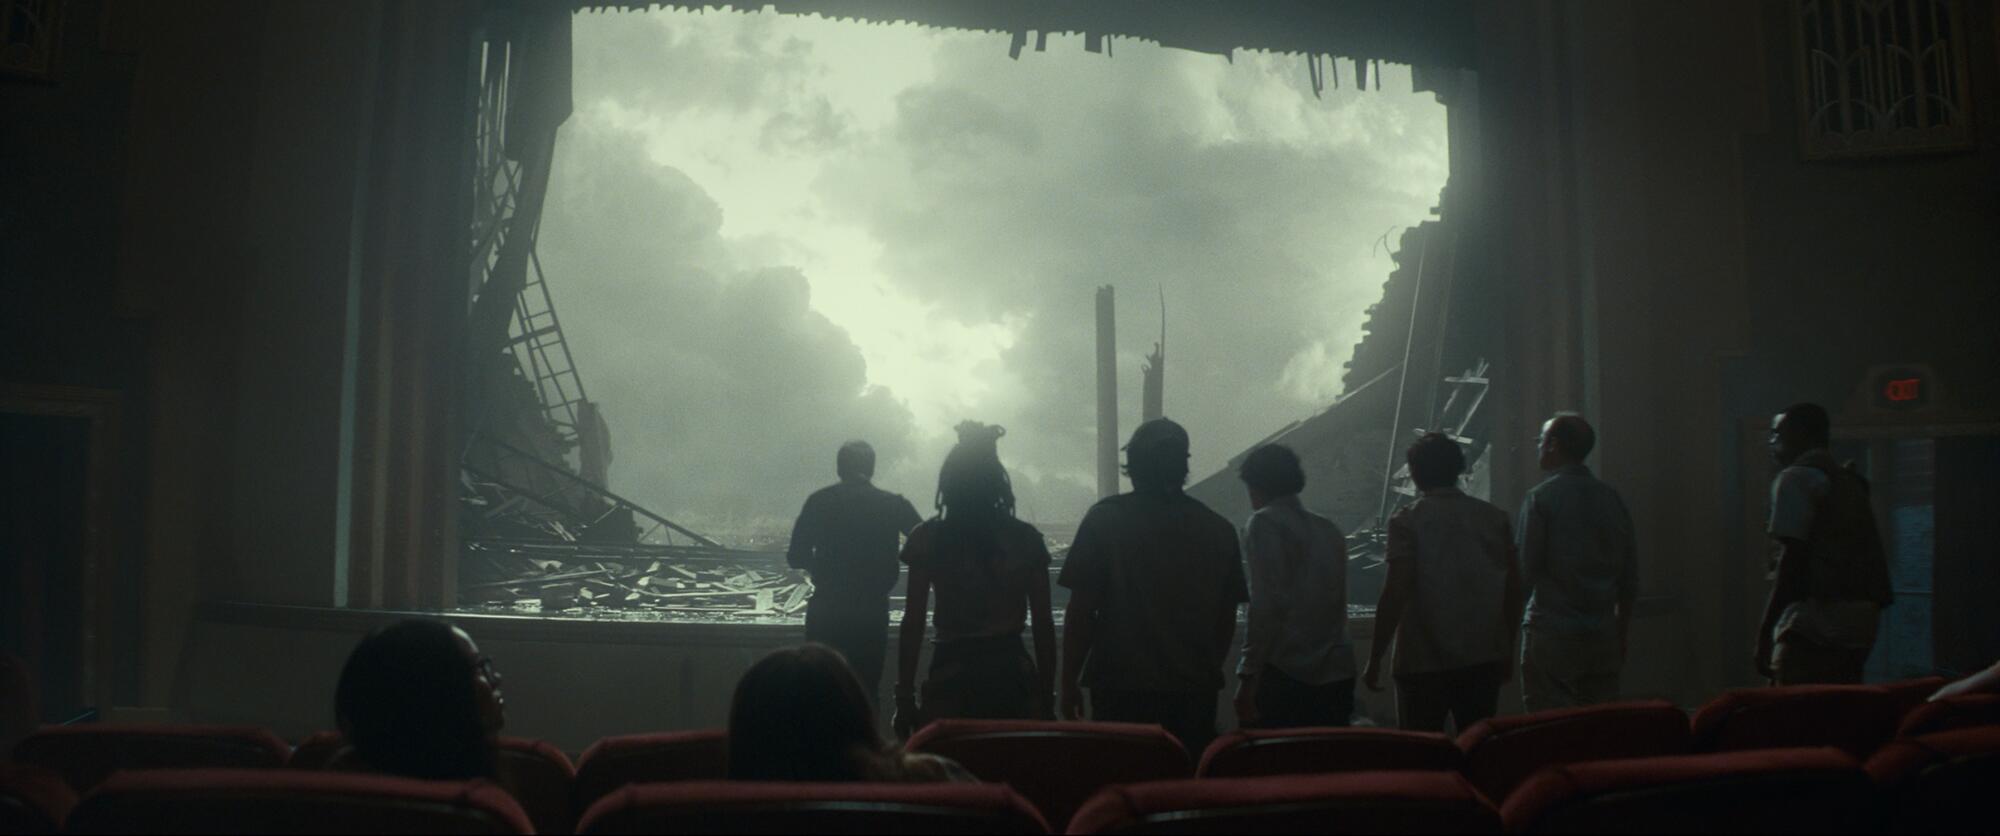 Survivors of a tornado gaze through the ruins of the screen.